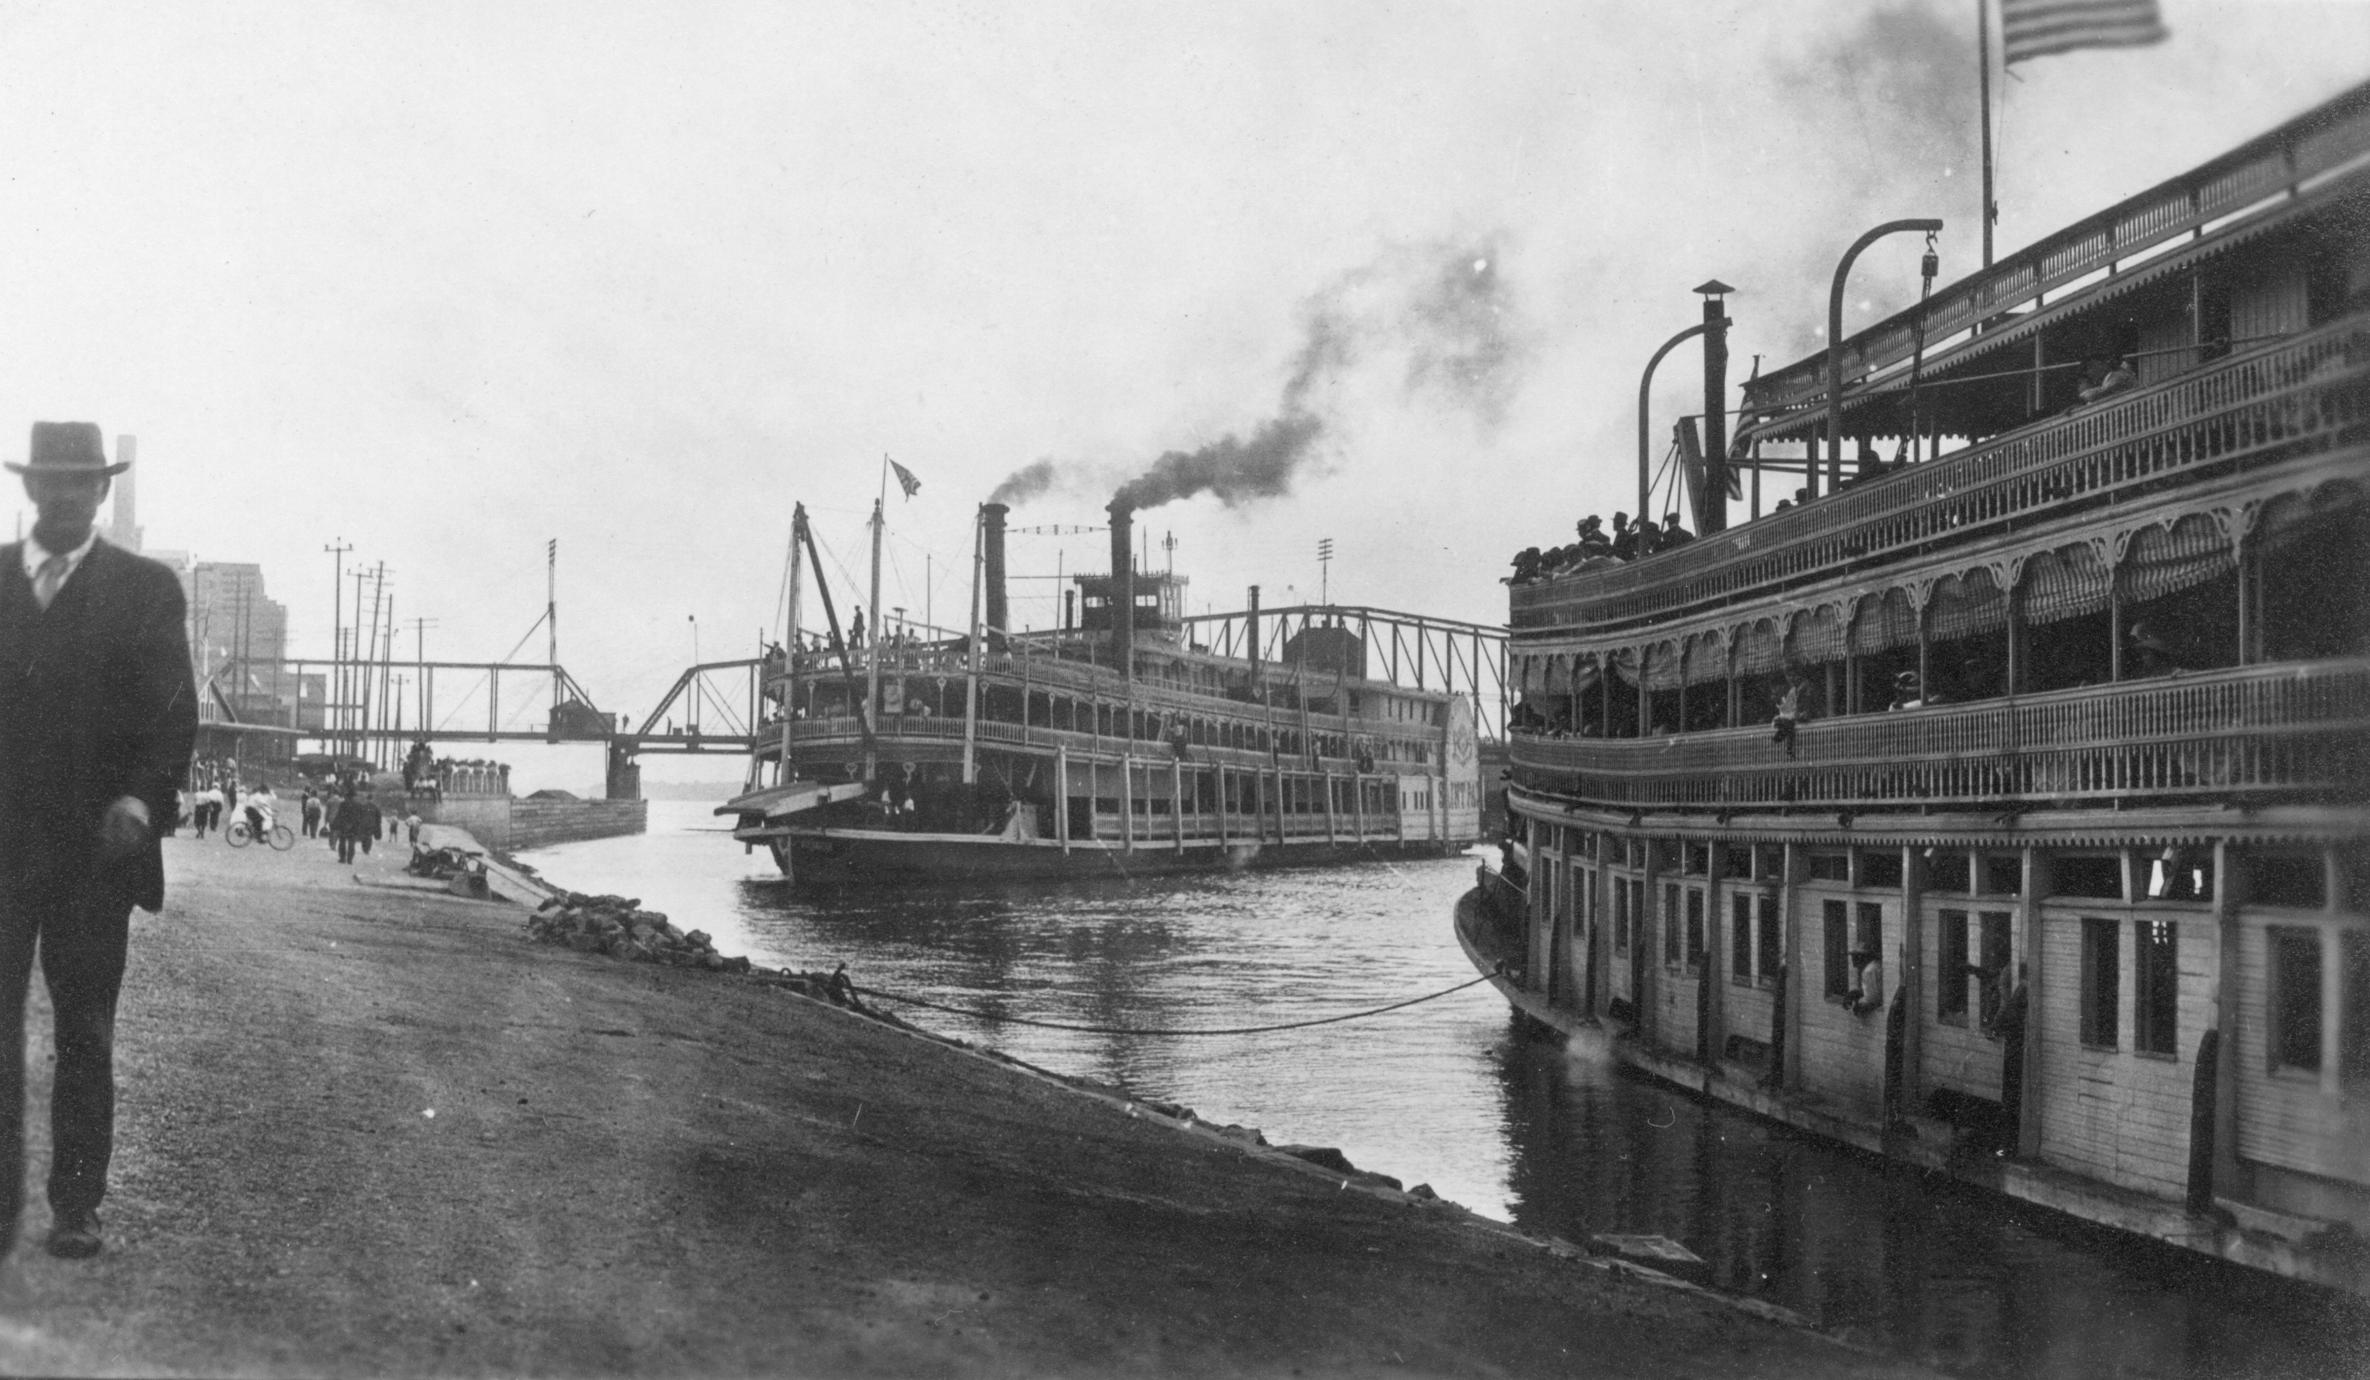 Прибывает пароход. Пароход на Миссисипи 19 век. Миссисипи 1920е. Пароходы на реке Миссисипи. Миссисипи в 1900 году.